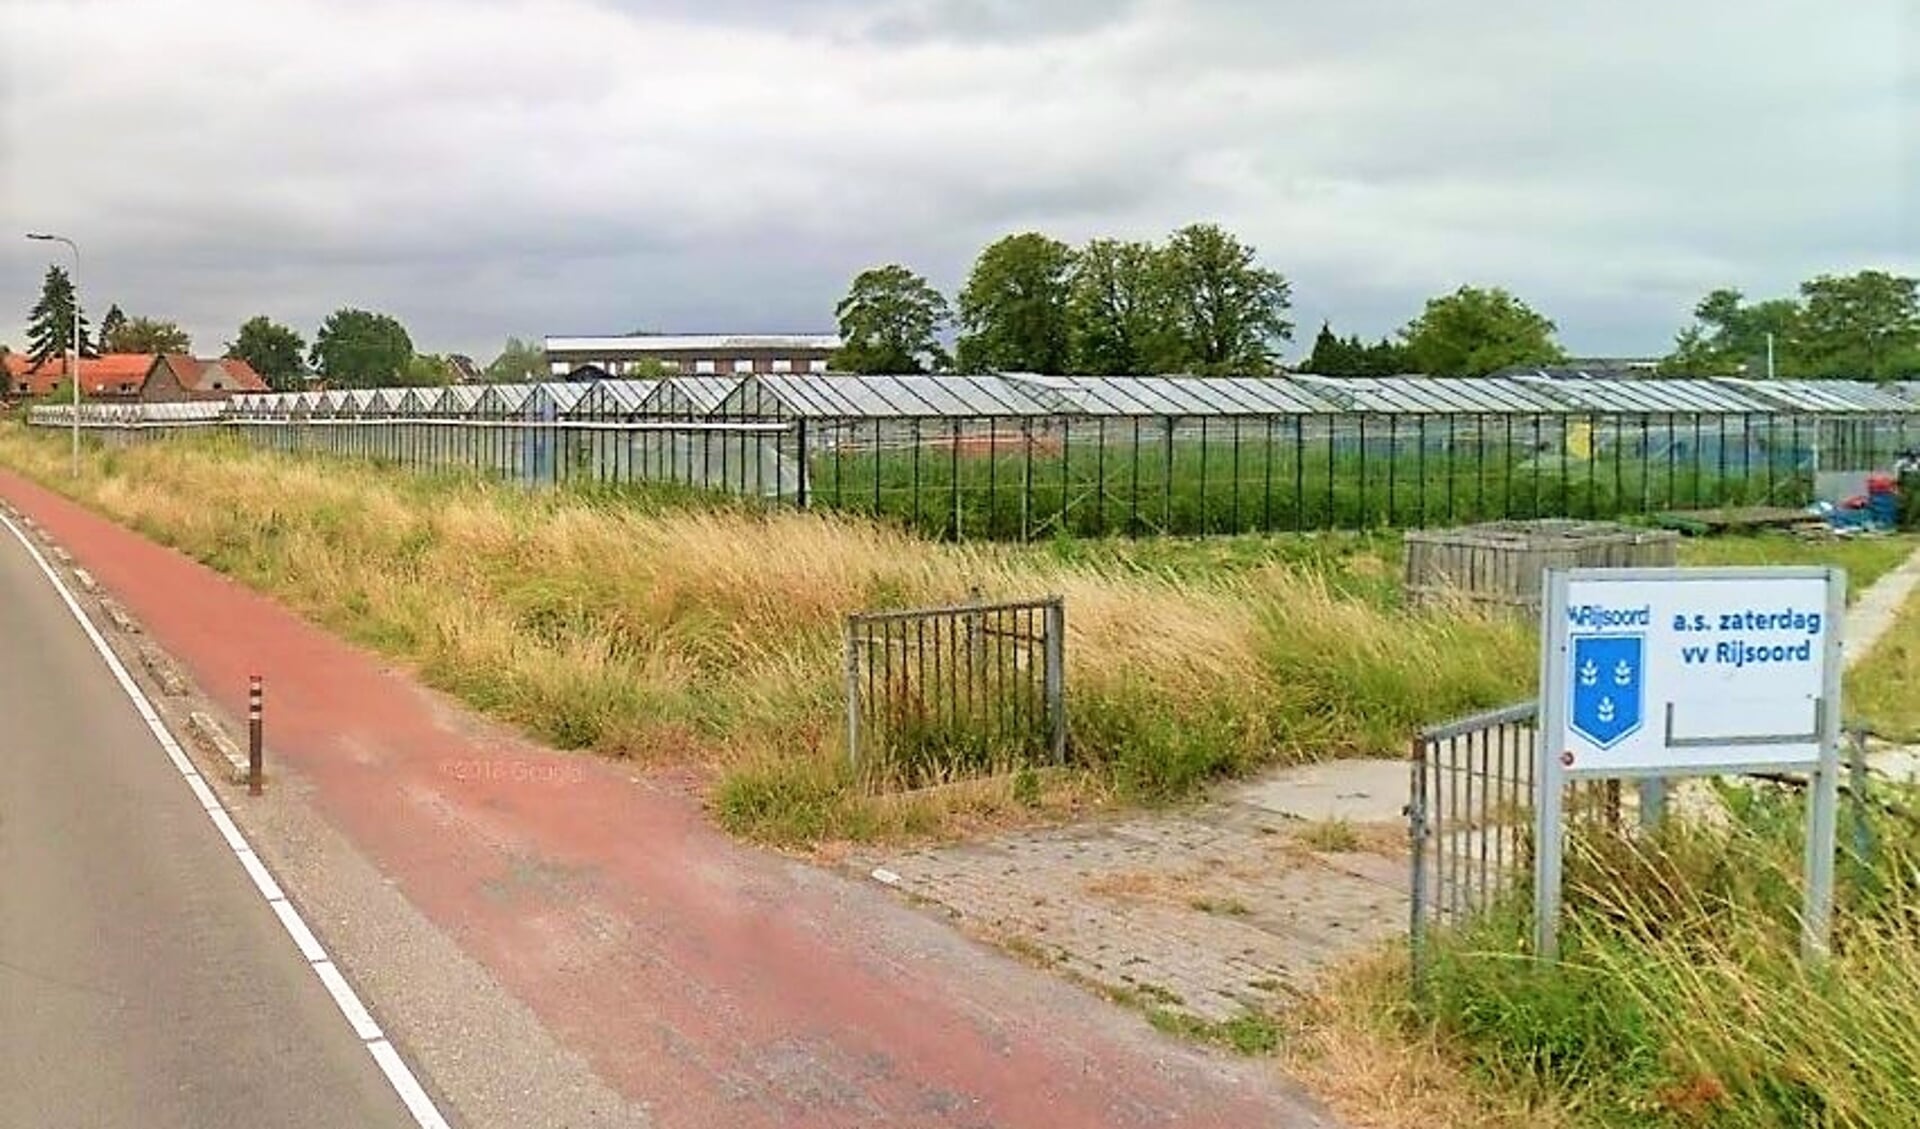 Met de ontwikkeling van “De Landerij van Rijsoord” zal er nu negen hectare beschikbaar komen voor woningbouw.  